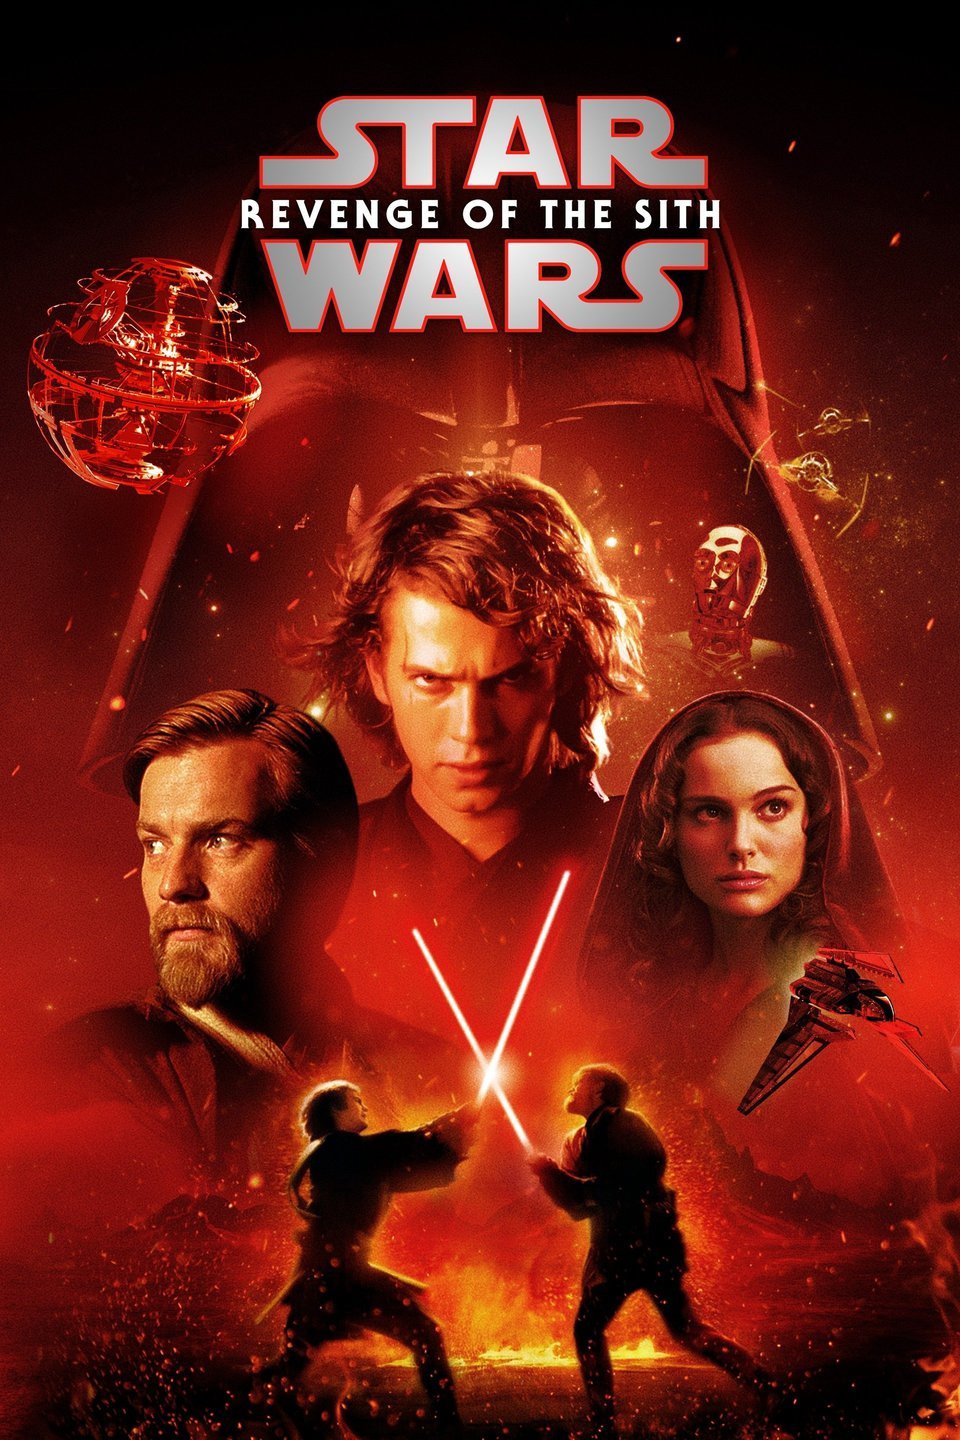 watch star wars full movie episode 1